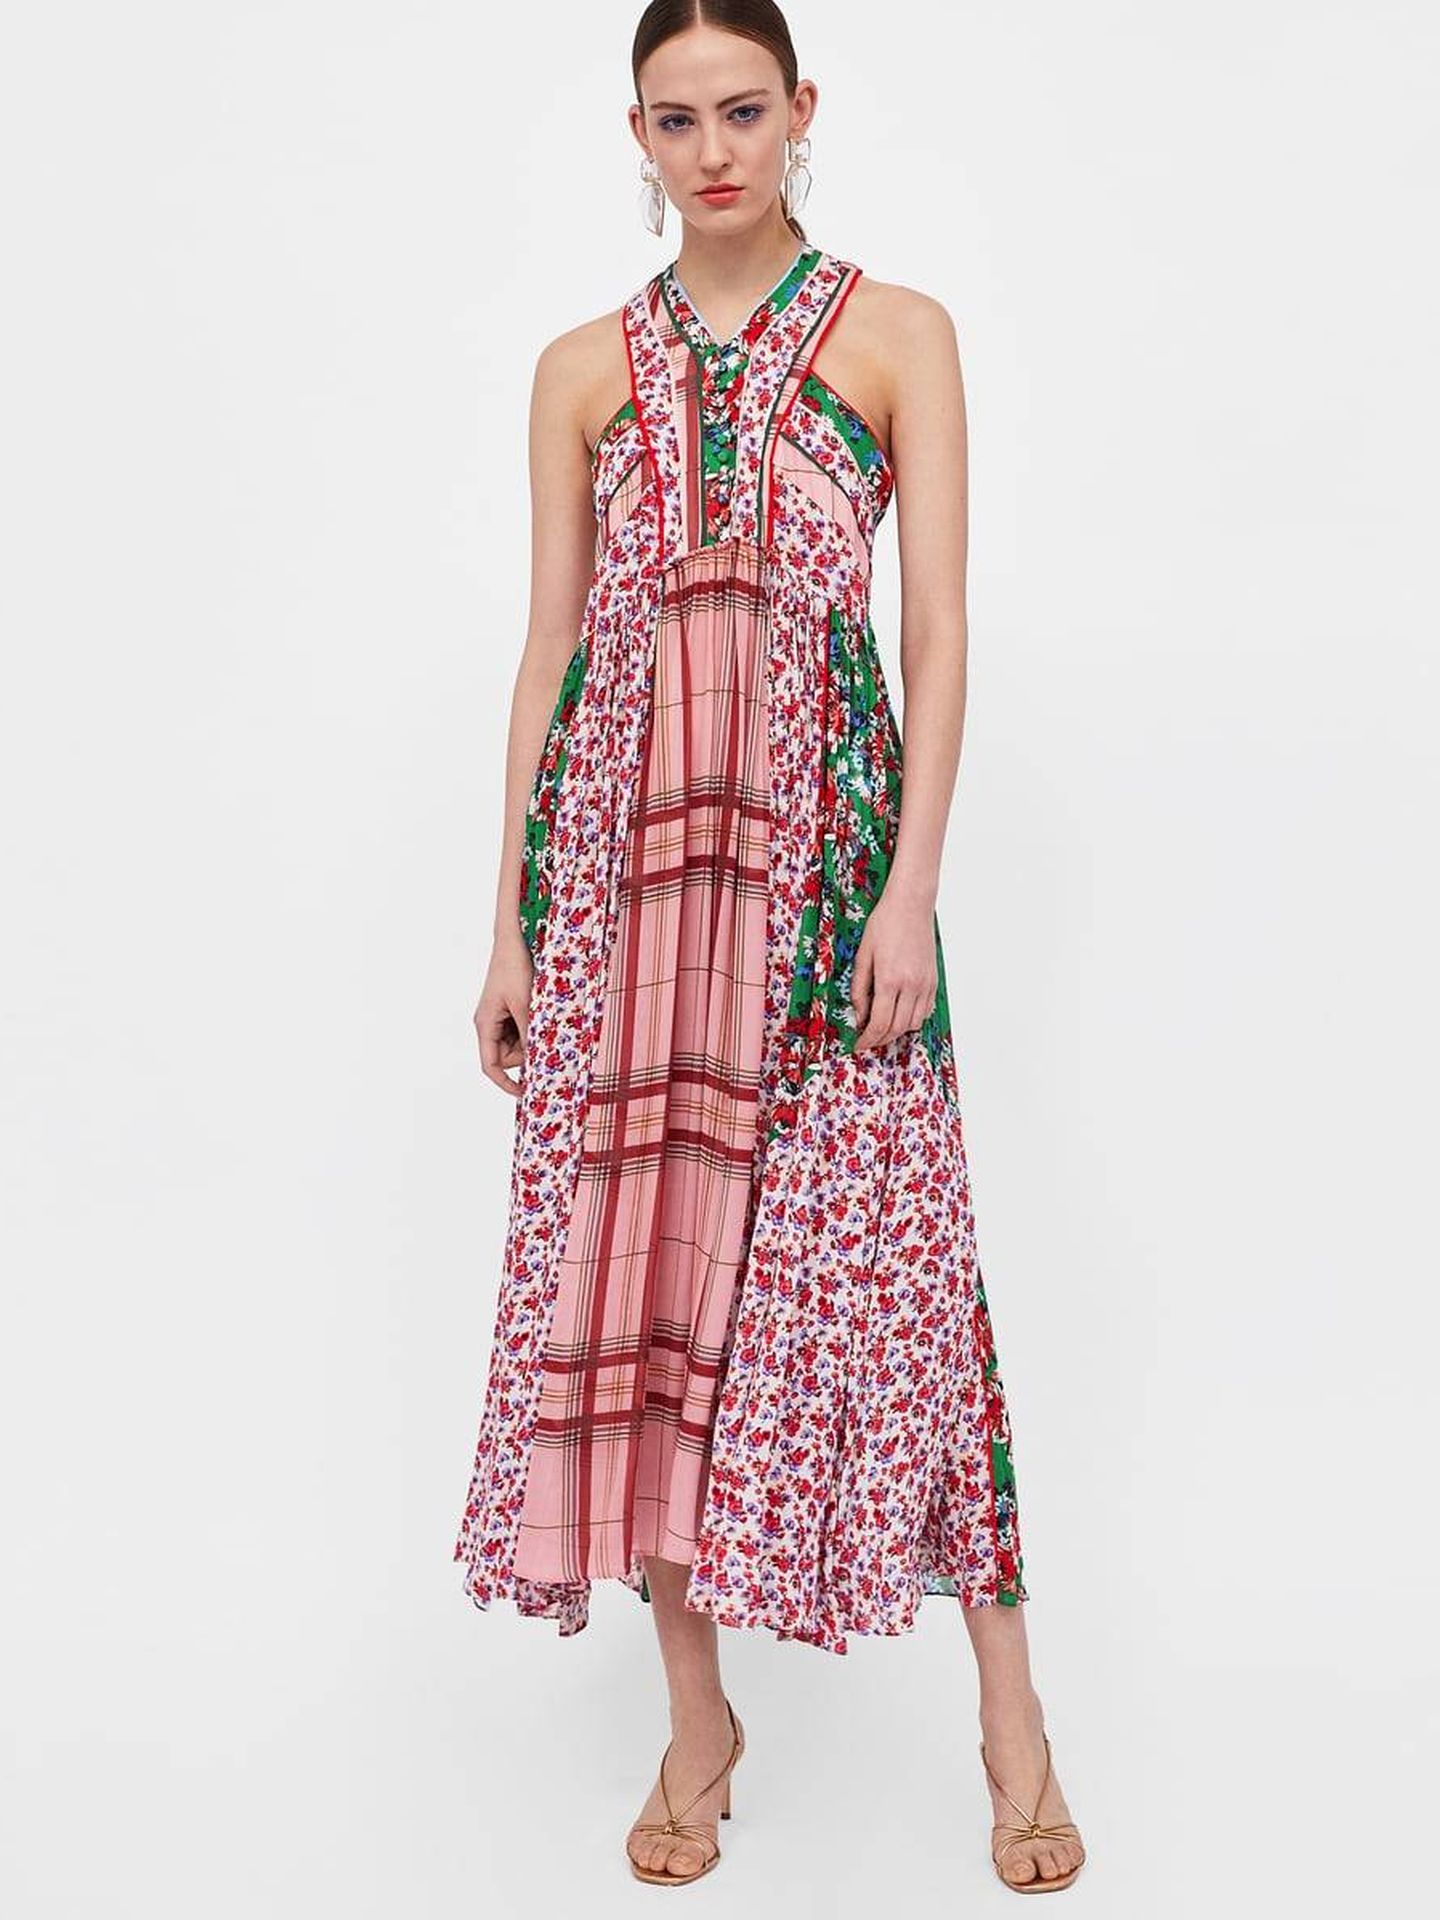 El vestido, en la tienda online de la firma. (Zara.com)